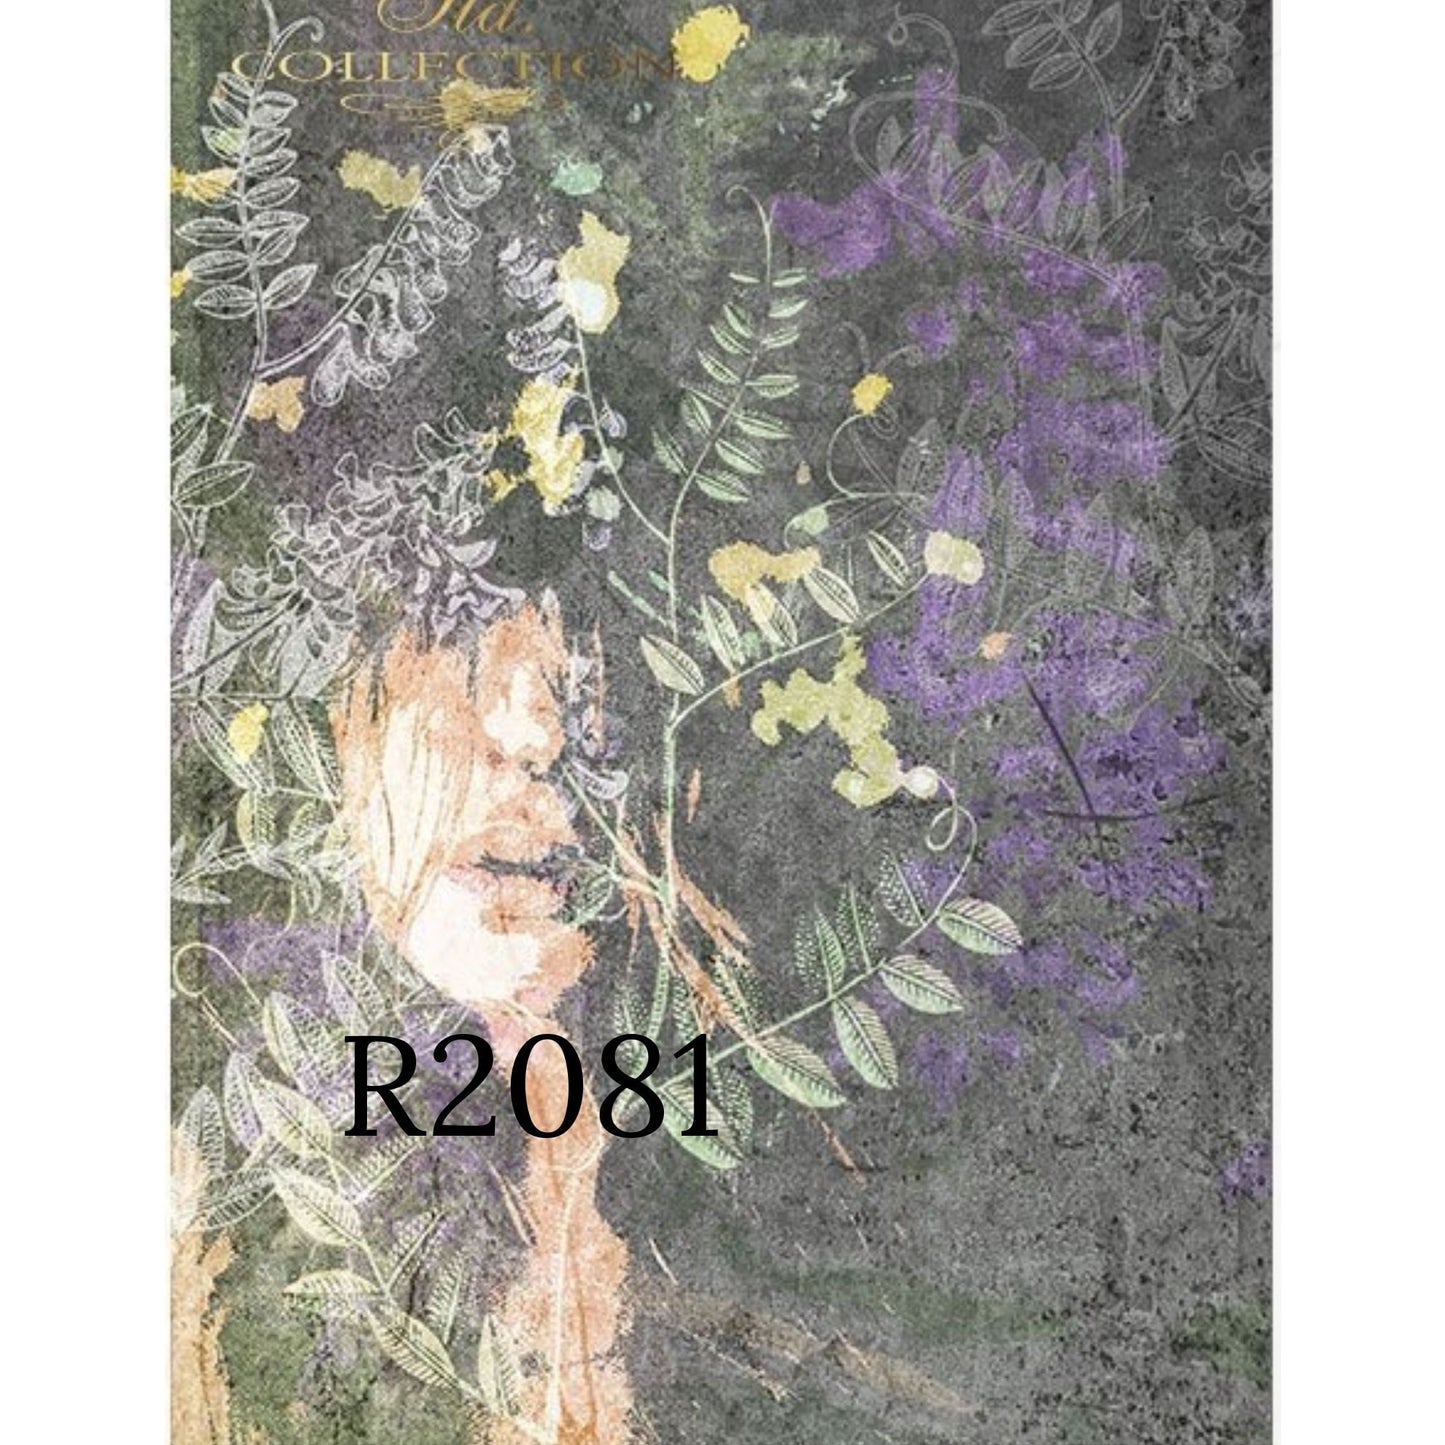 R2080 - Decoupage Rice Paper - woman's face, plants, vetch